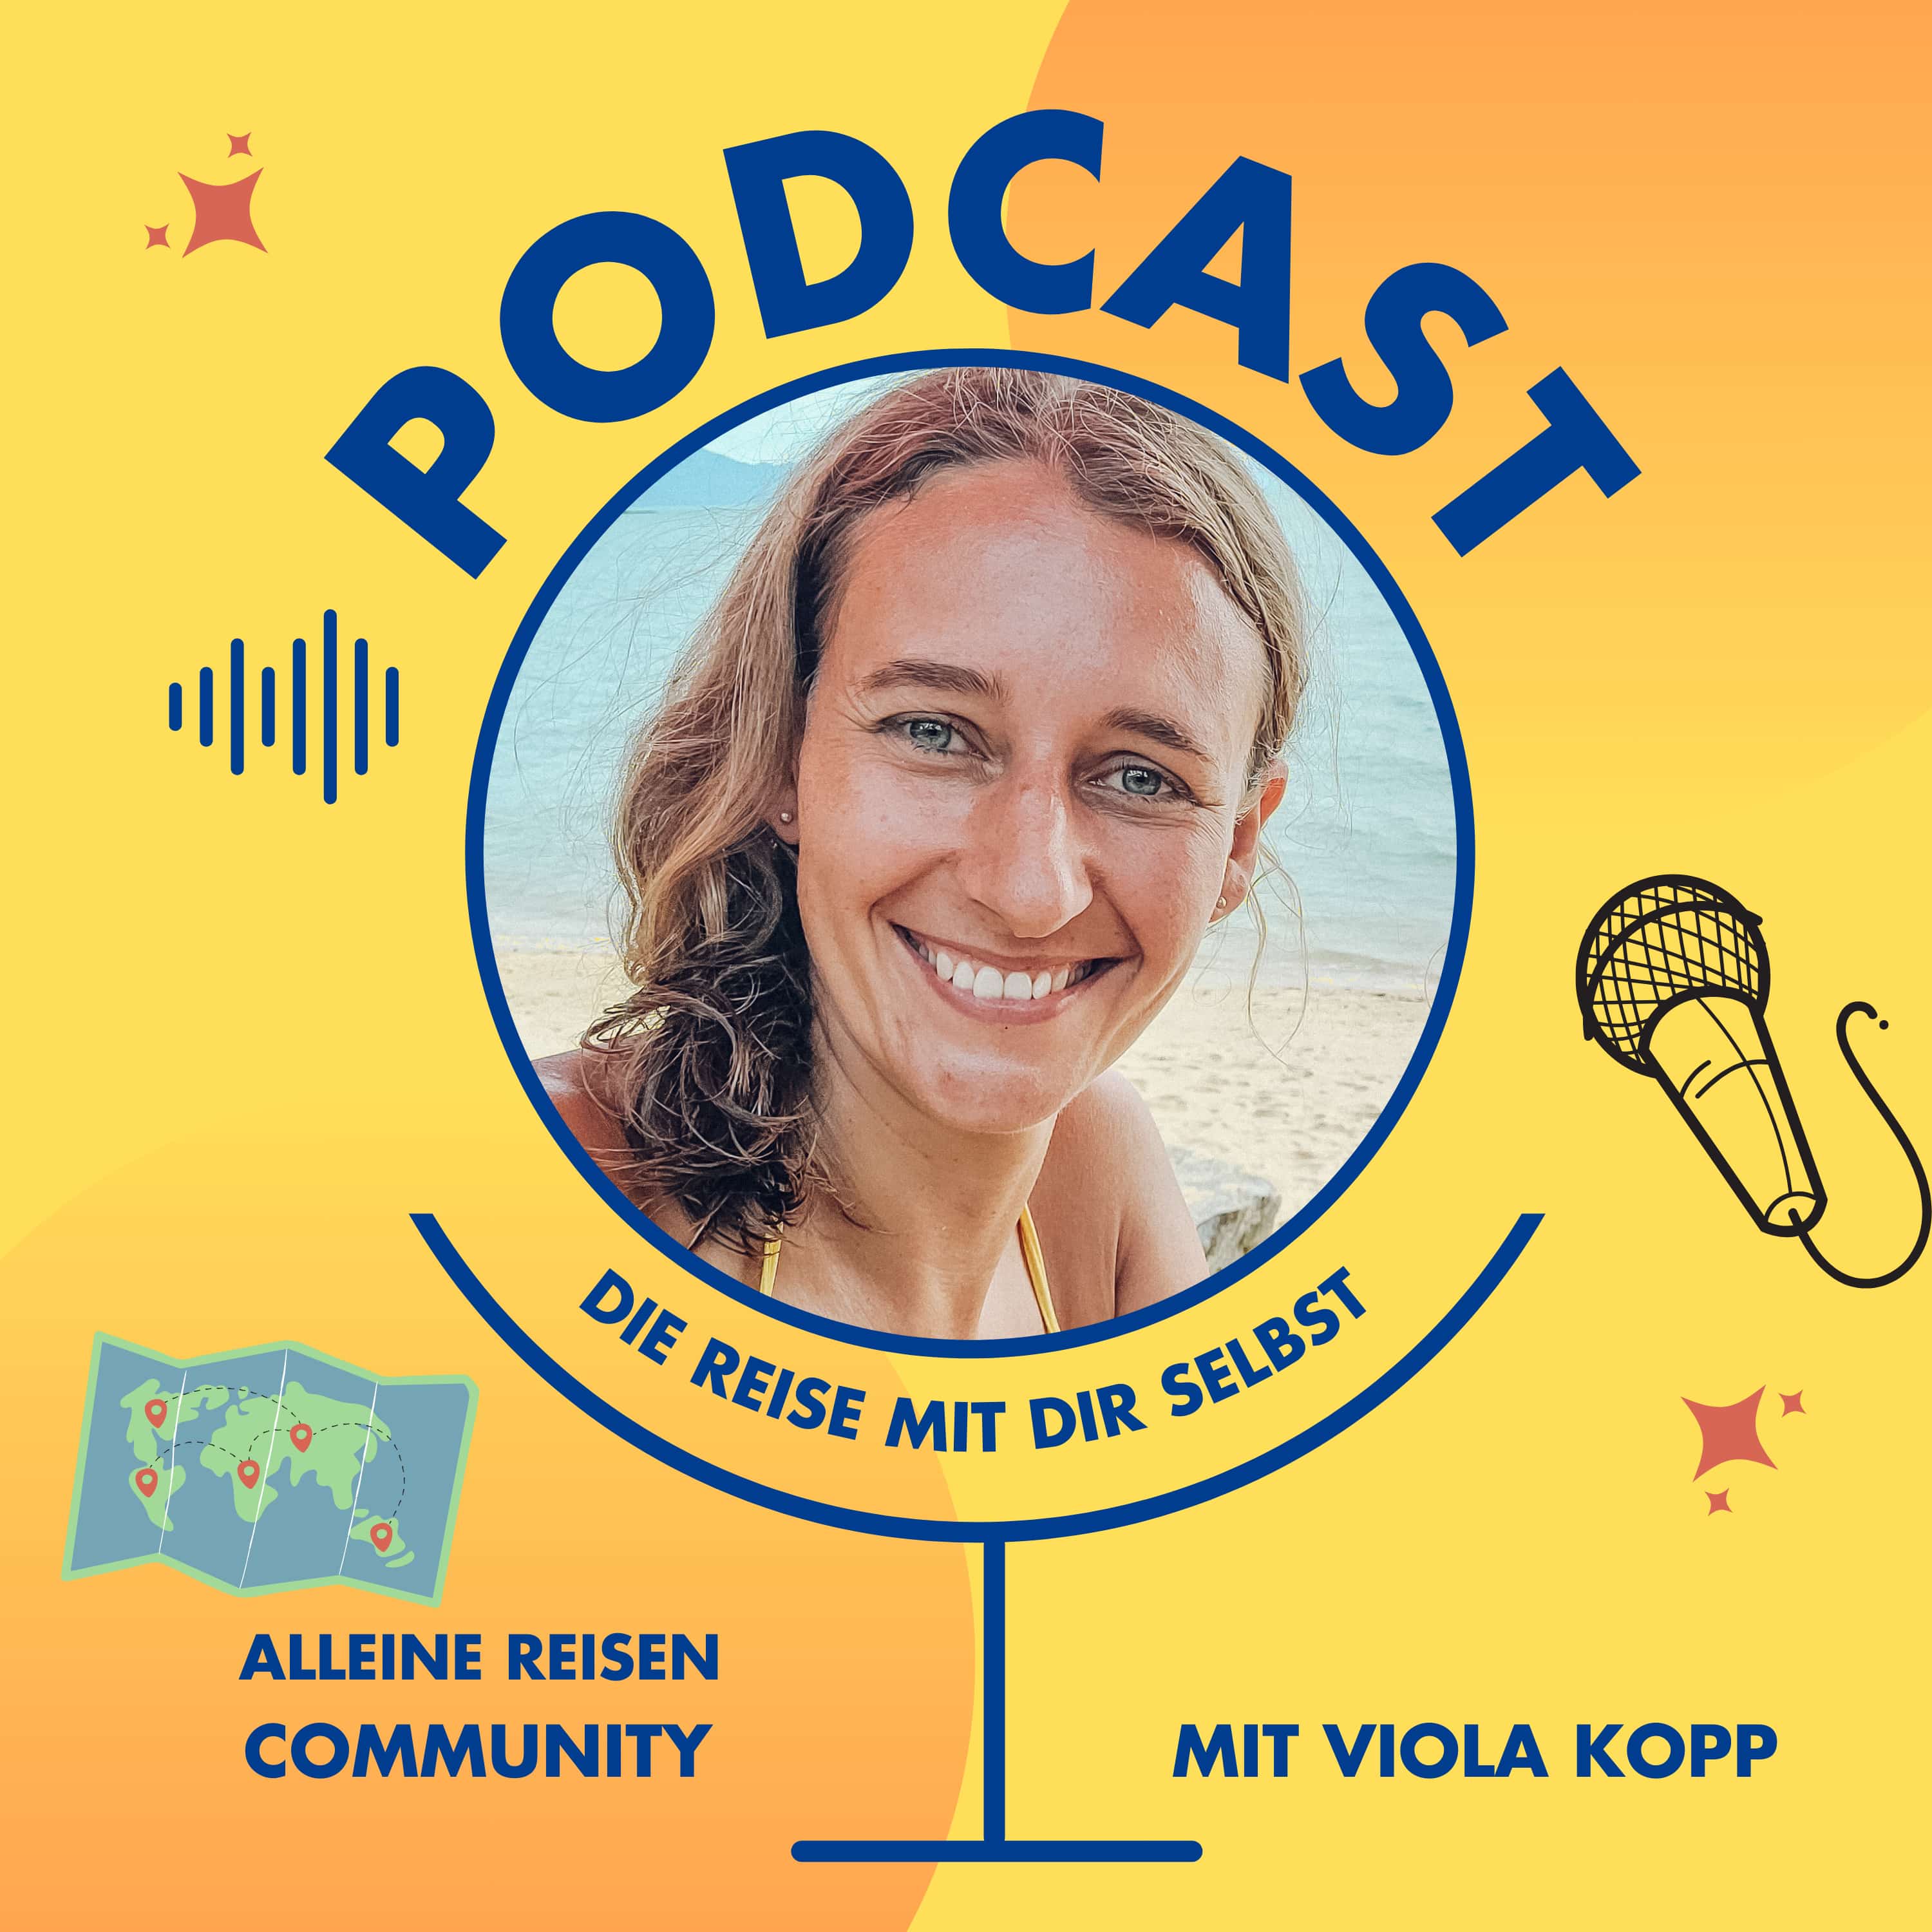 Auf der Reise mit dir selbst - der Reise und Tourismus Podcast von Viola Kopp